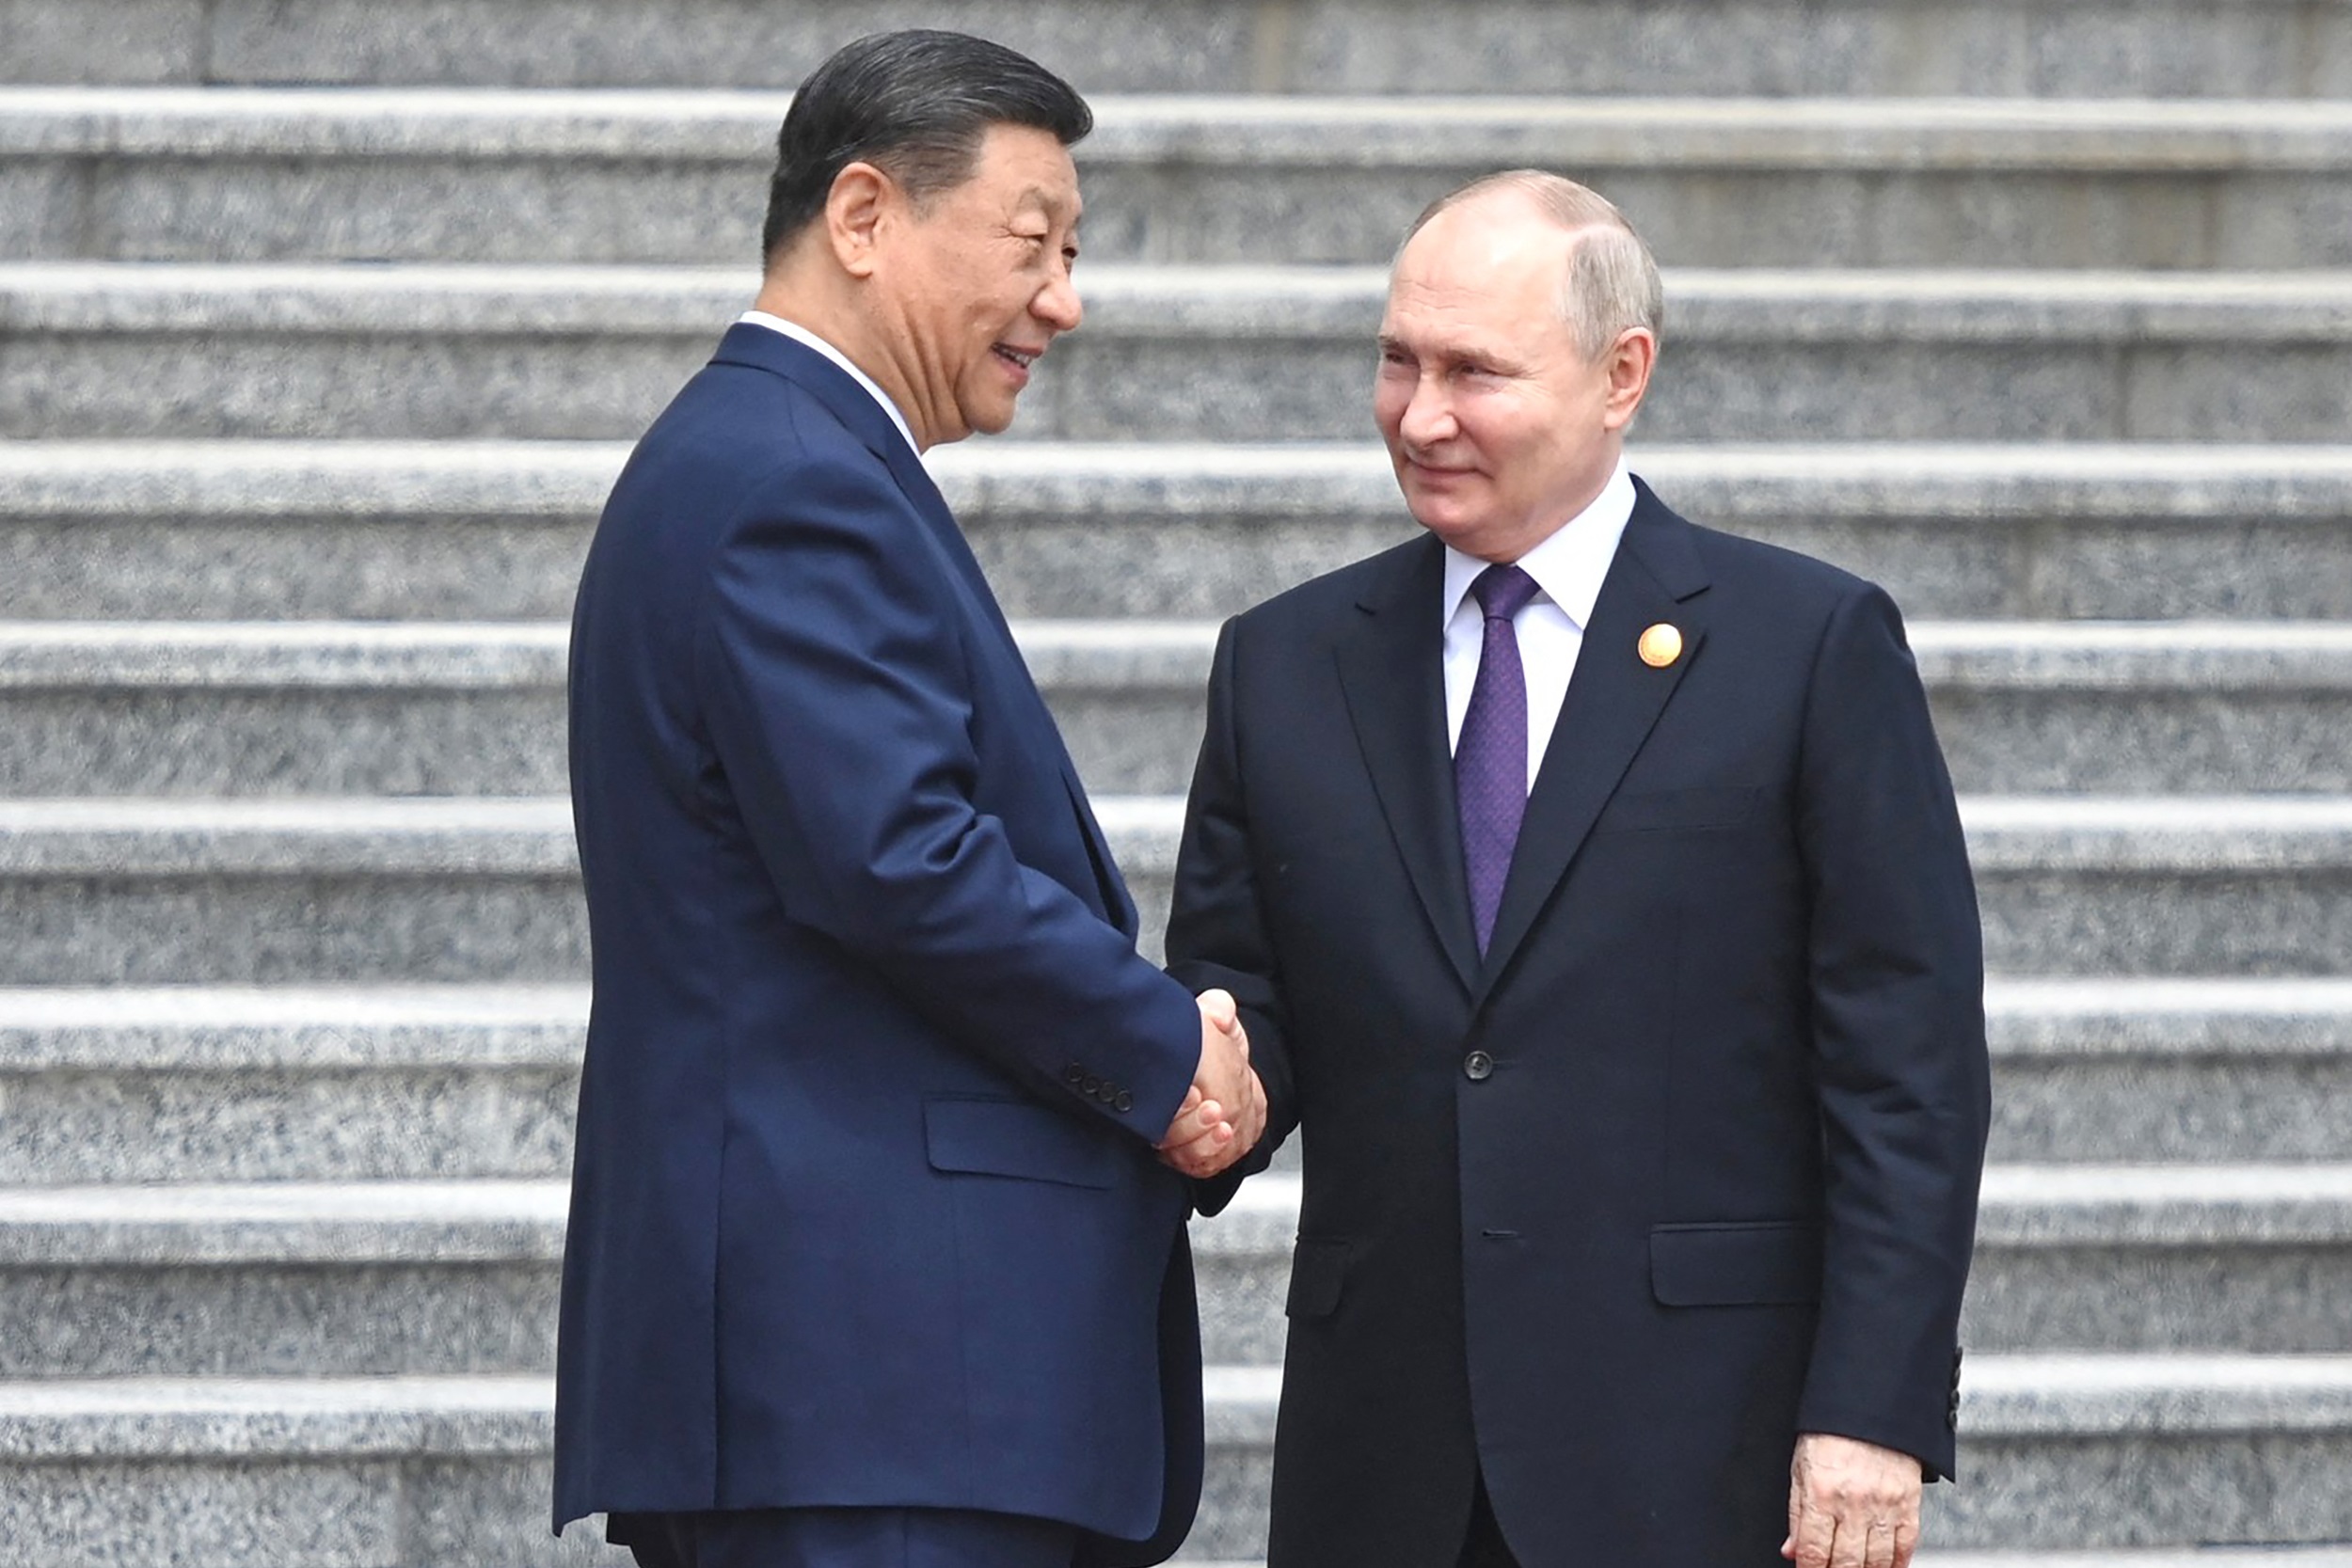 Πεκίνο: Ο πρόεδρος της Κίνας Σι υποδέχεται τον Πούτιν και εξαίρει τη διμερή σχέση που «ευνοεί την ειρήνη»